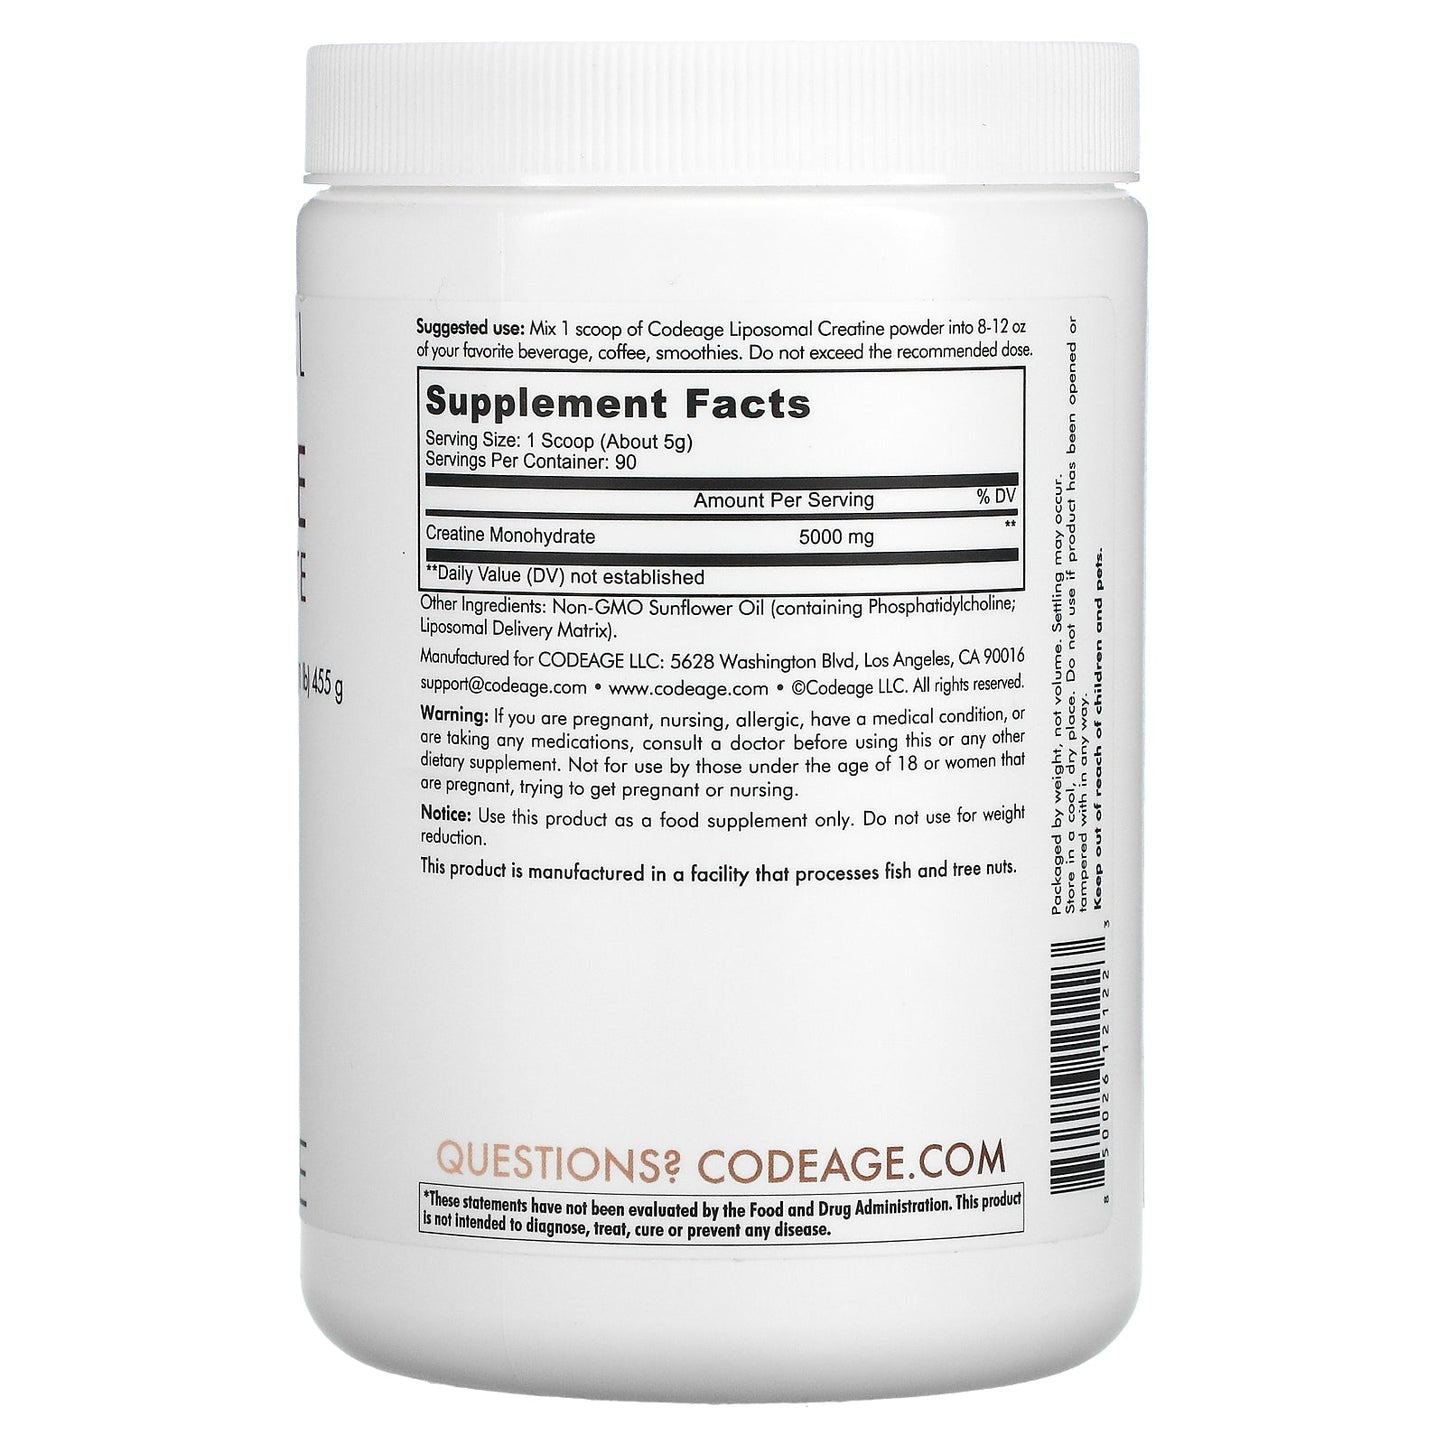 Codeage, Liposomal Creatine Monohydrate Powder, Unflavored, 1 lb (455 g)